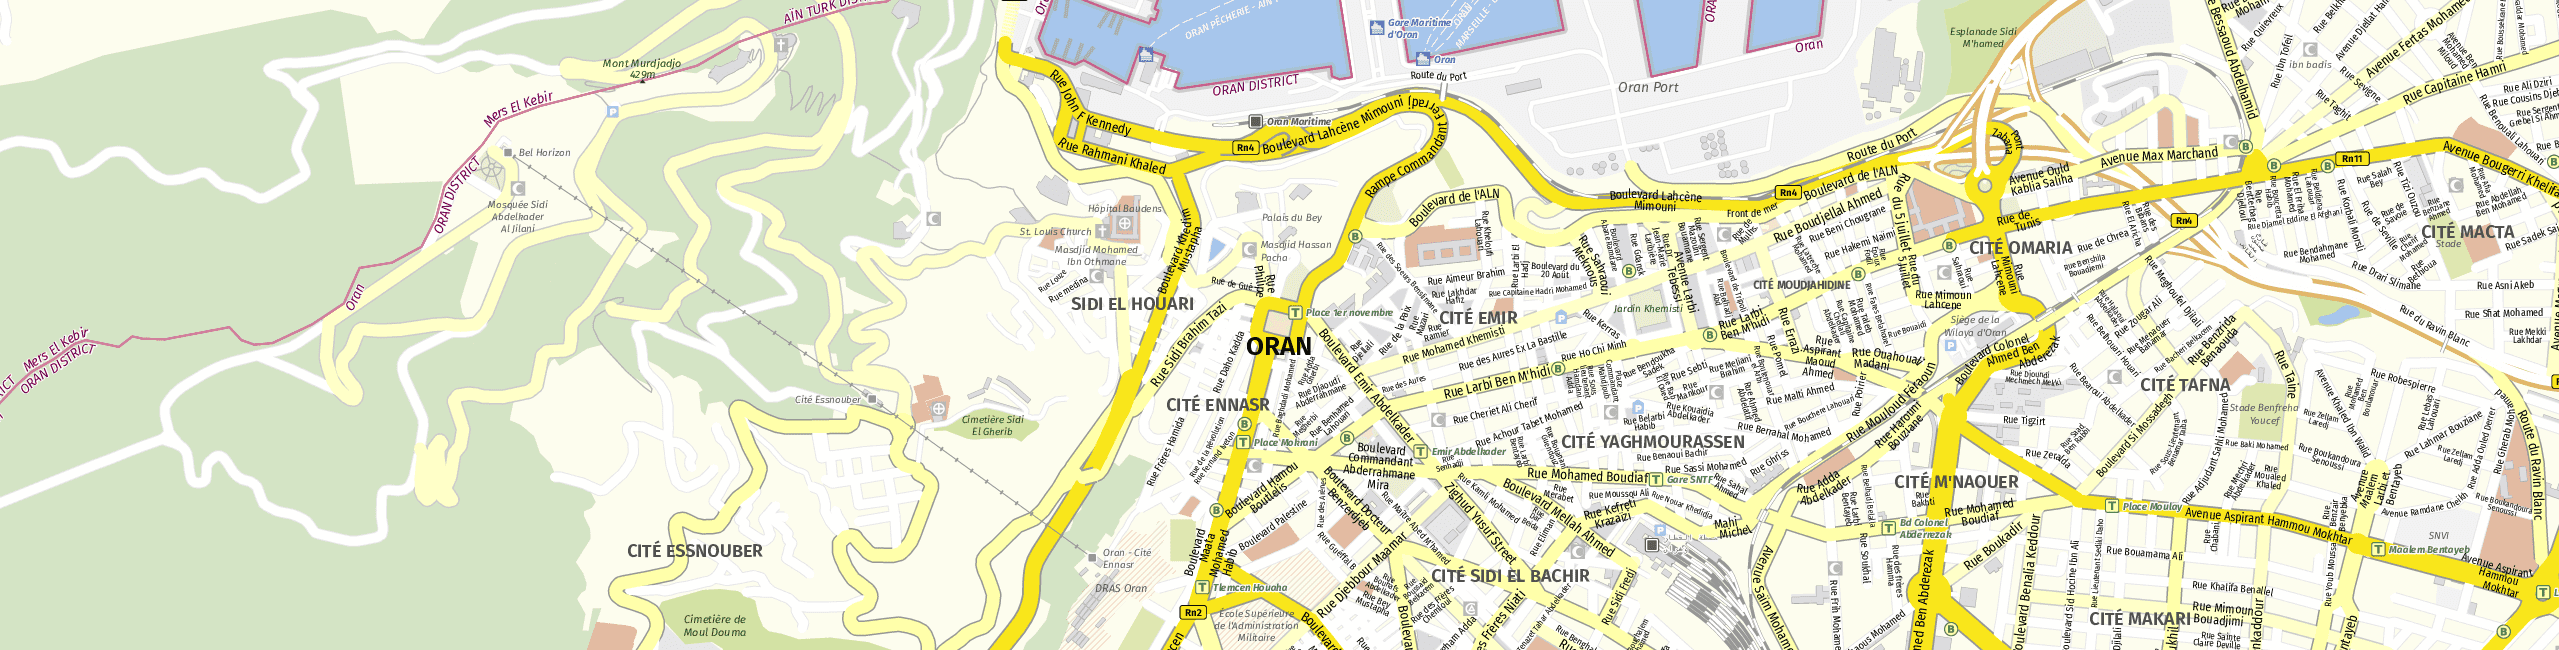 Stadtplan Oran zum Downloaden.